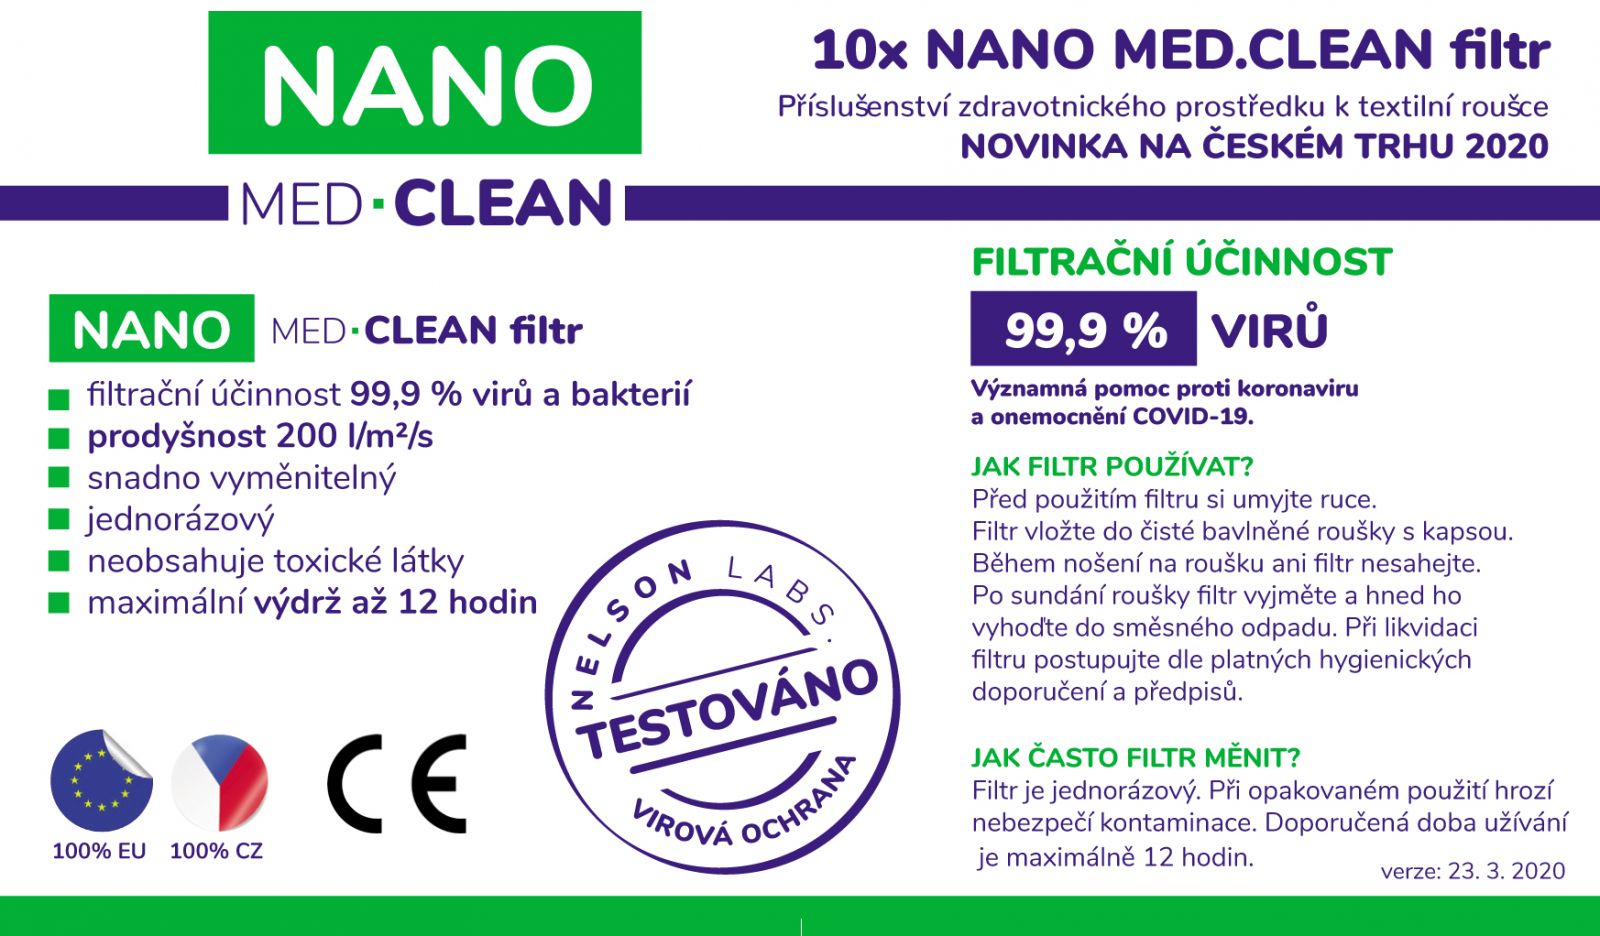 Nano Medical 10x NANO MED.CLEAN filtr Triola